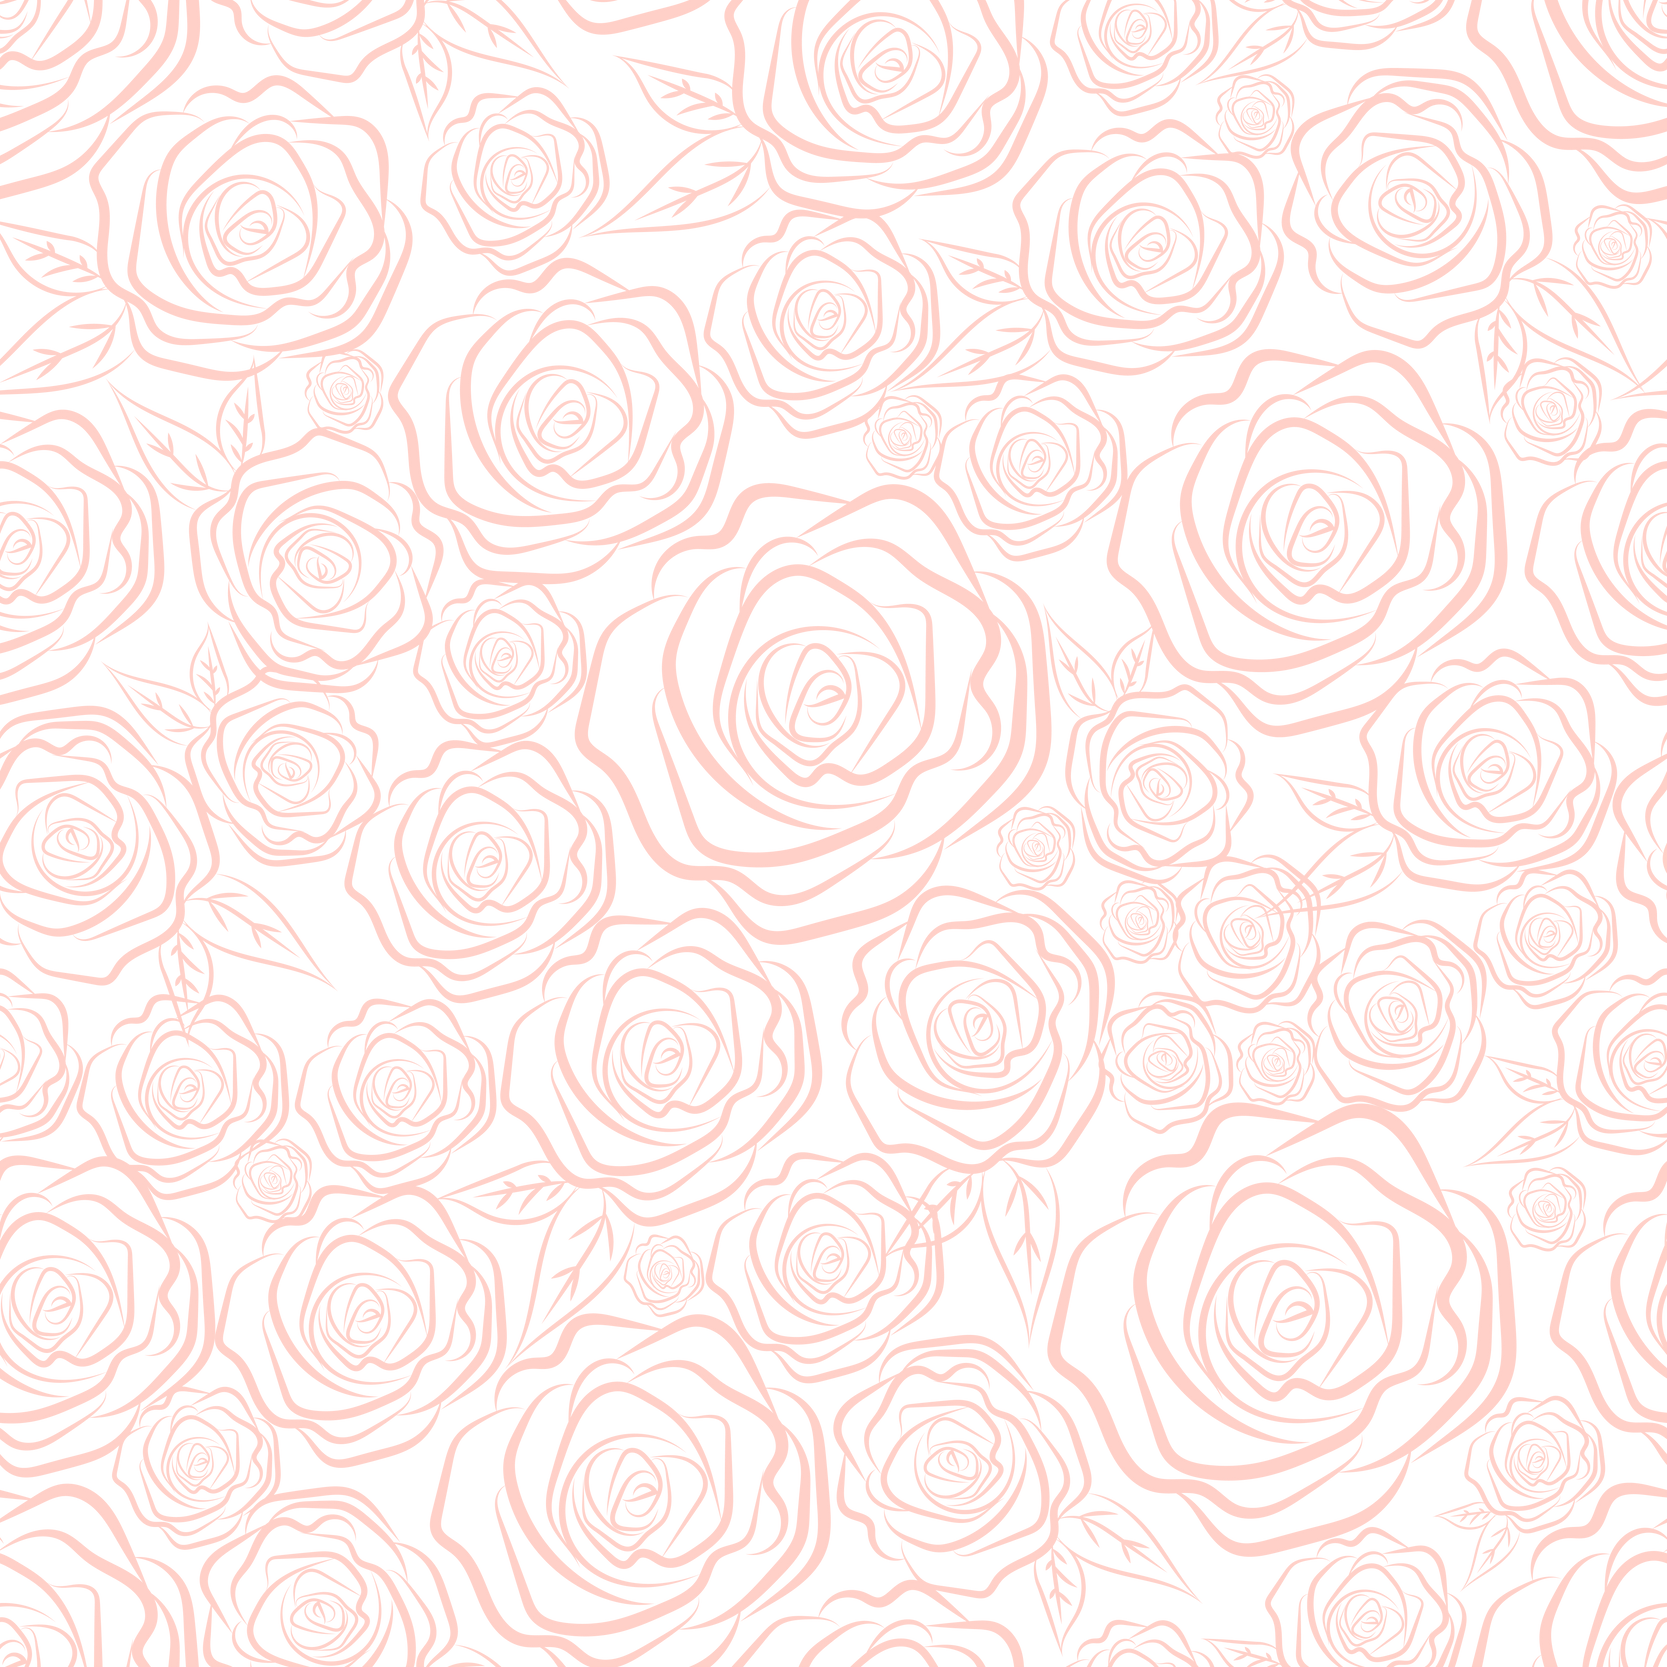 Pink roses, seamless pattern